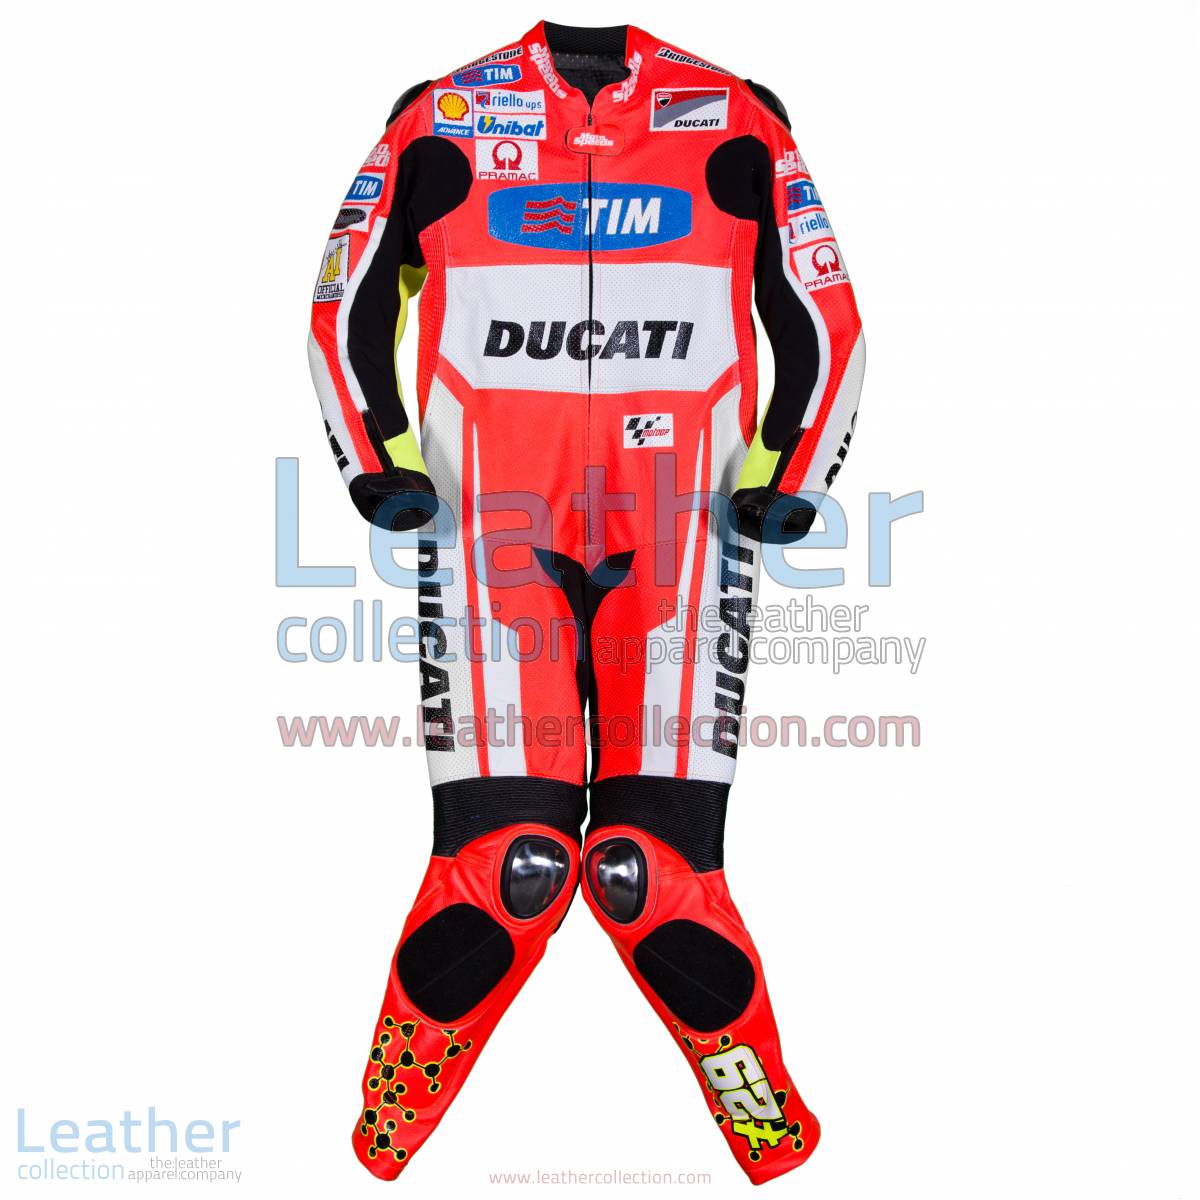 Andrea Iannone Ducati MotoGP 2015 Racing Suit | Andrea Iannone,Ducati racing suit